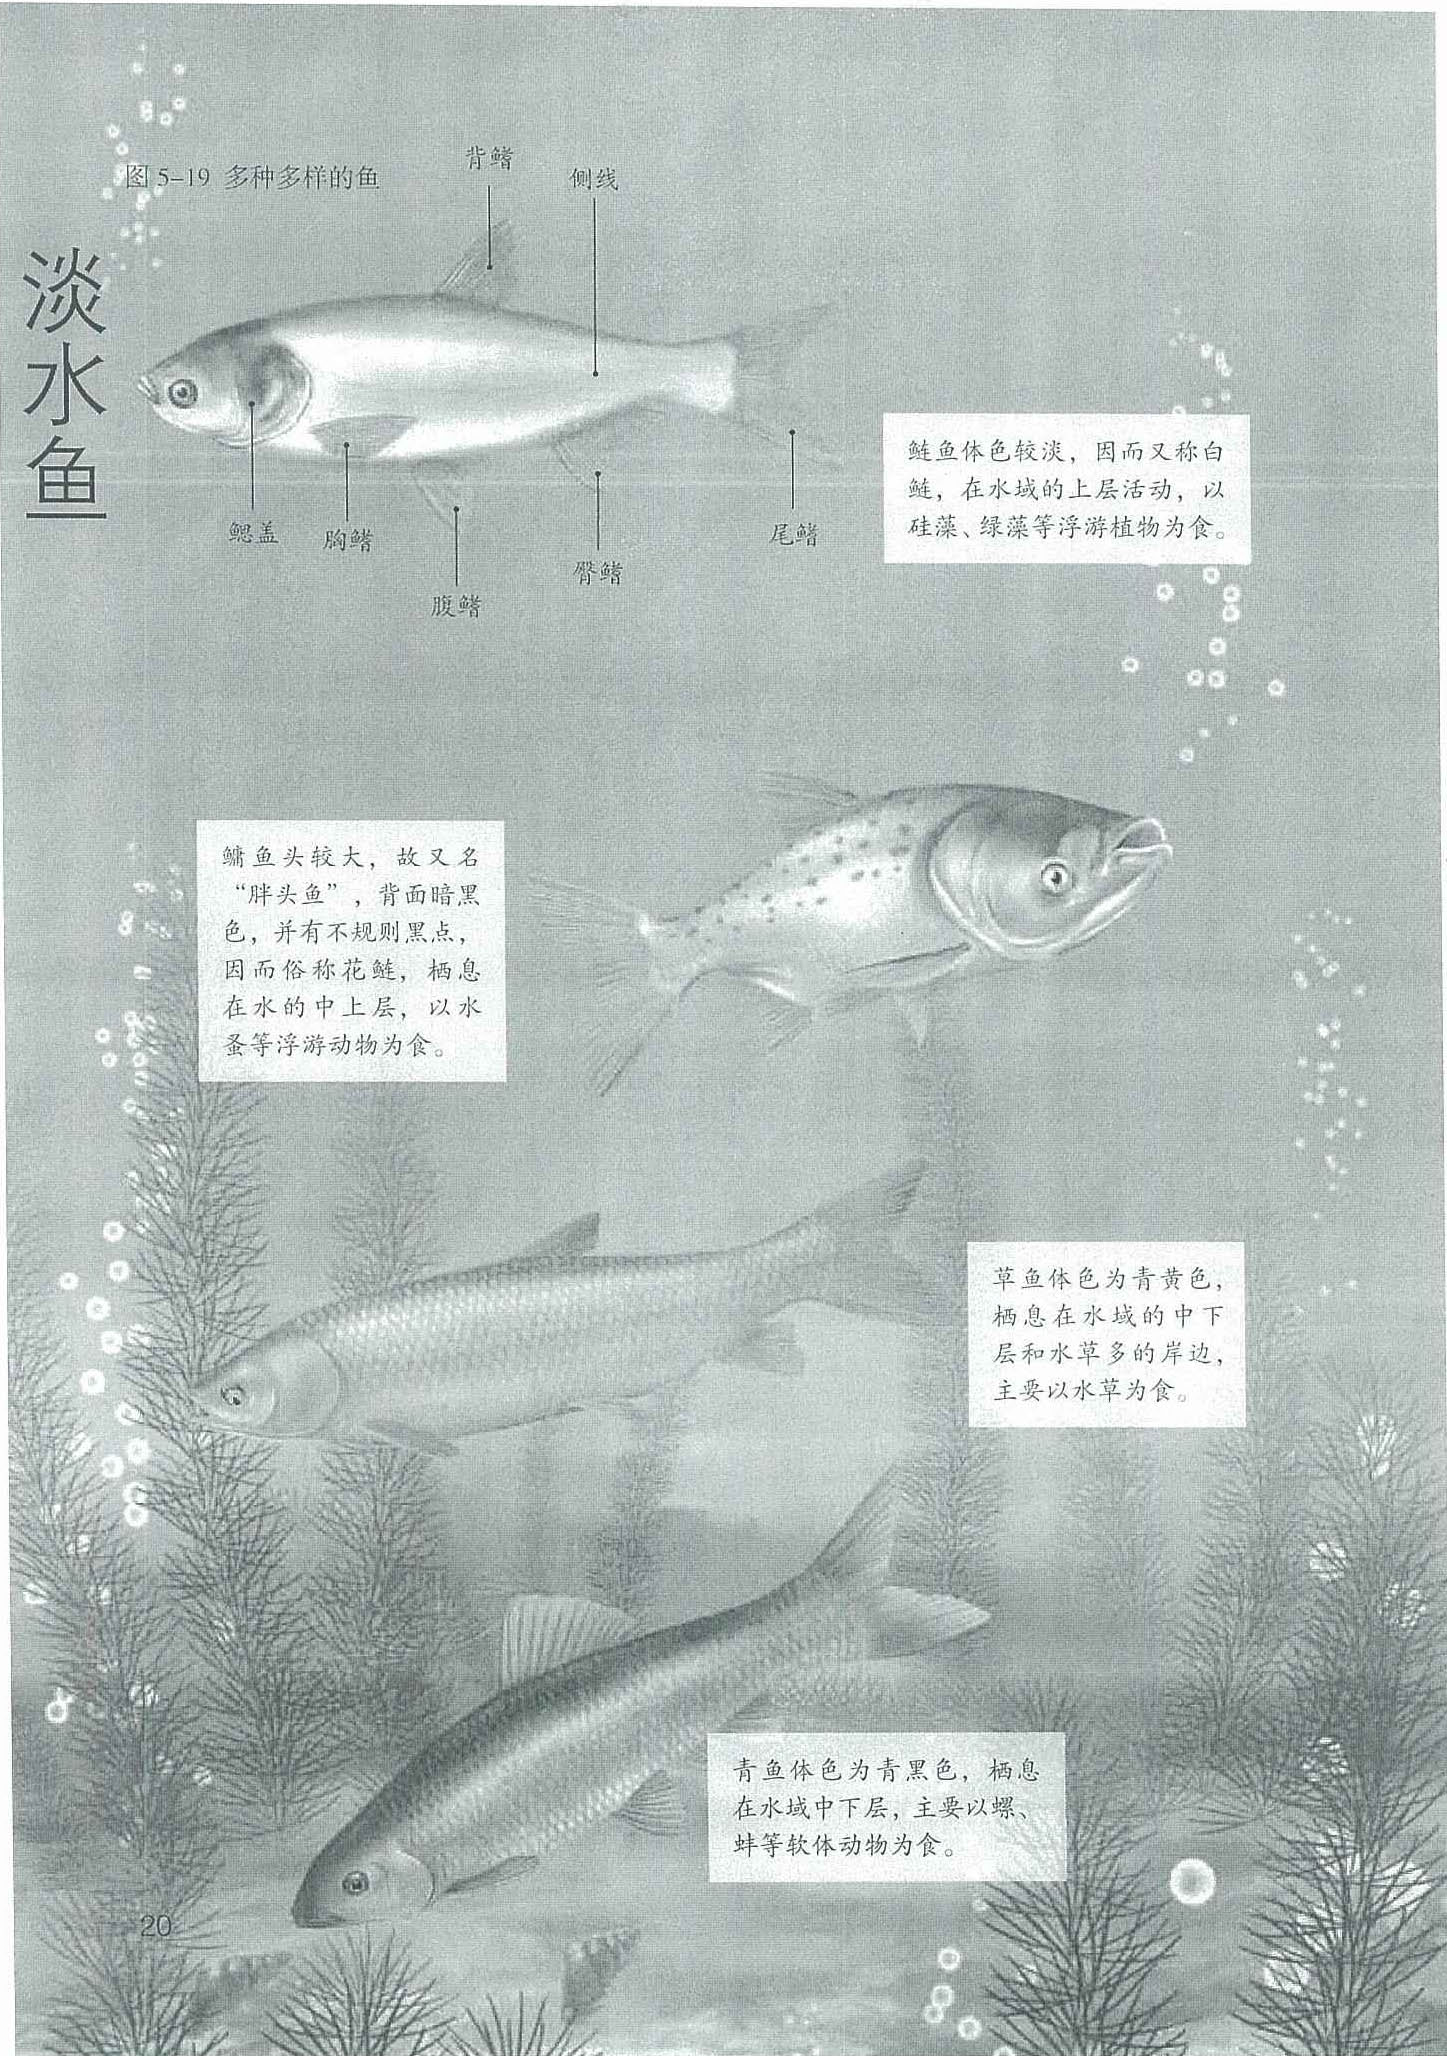 中国渔业科普系列：国民淡水鱼之鲤鱼_凤凰网视频_凤凰网